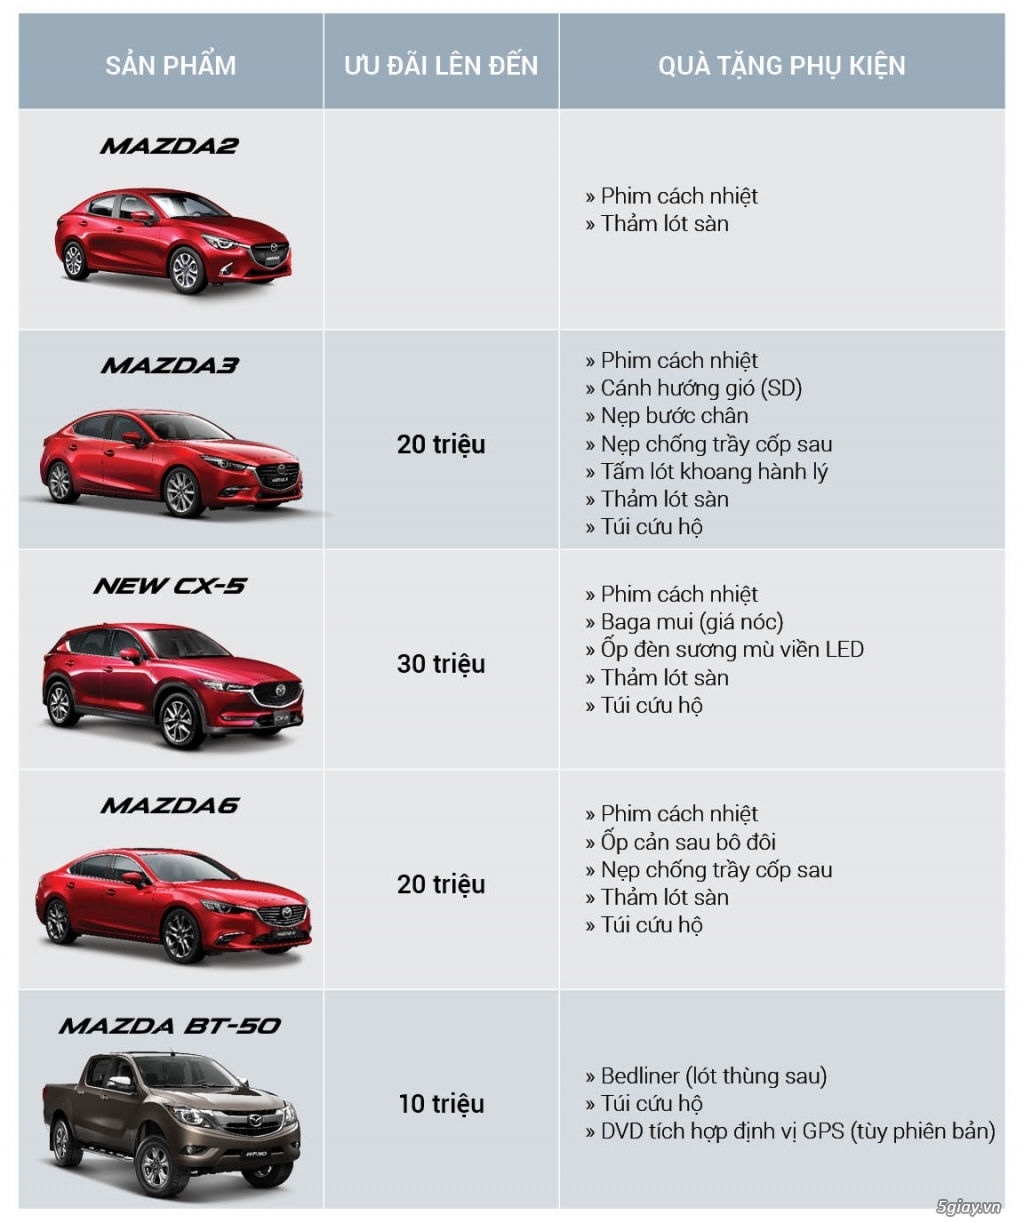 Mazda - Bảng giá xe Mazda cập nhập mới nhất 2019 - 18